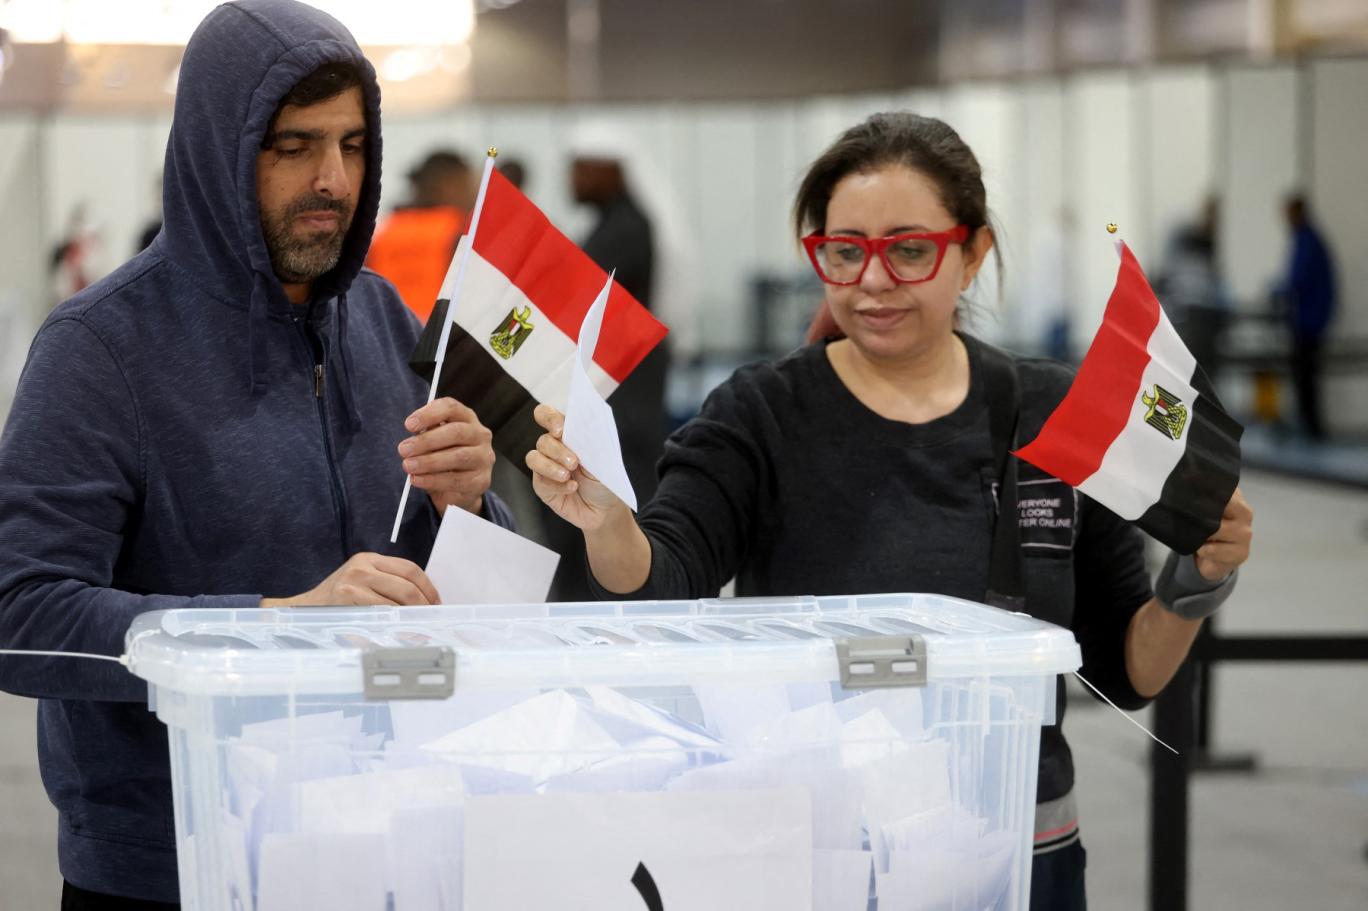 المصريون يبدأون التصويت في الانتخابات الرئاسية